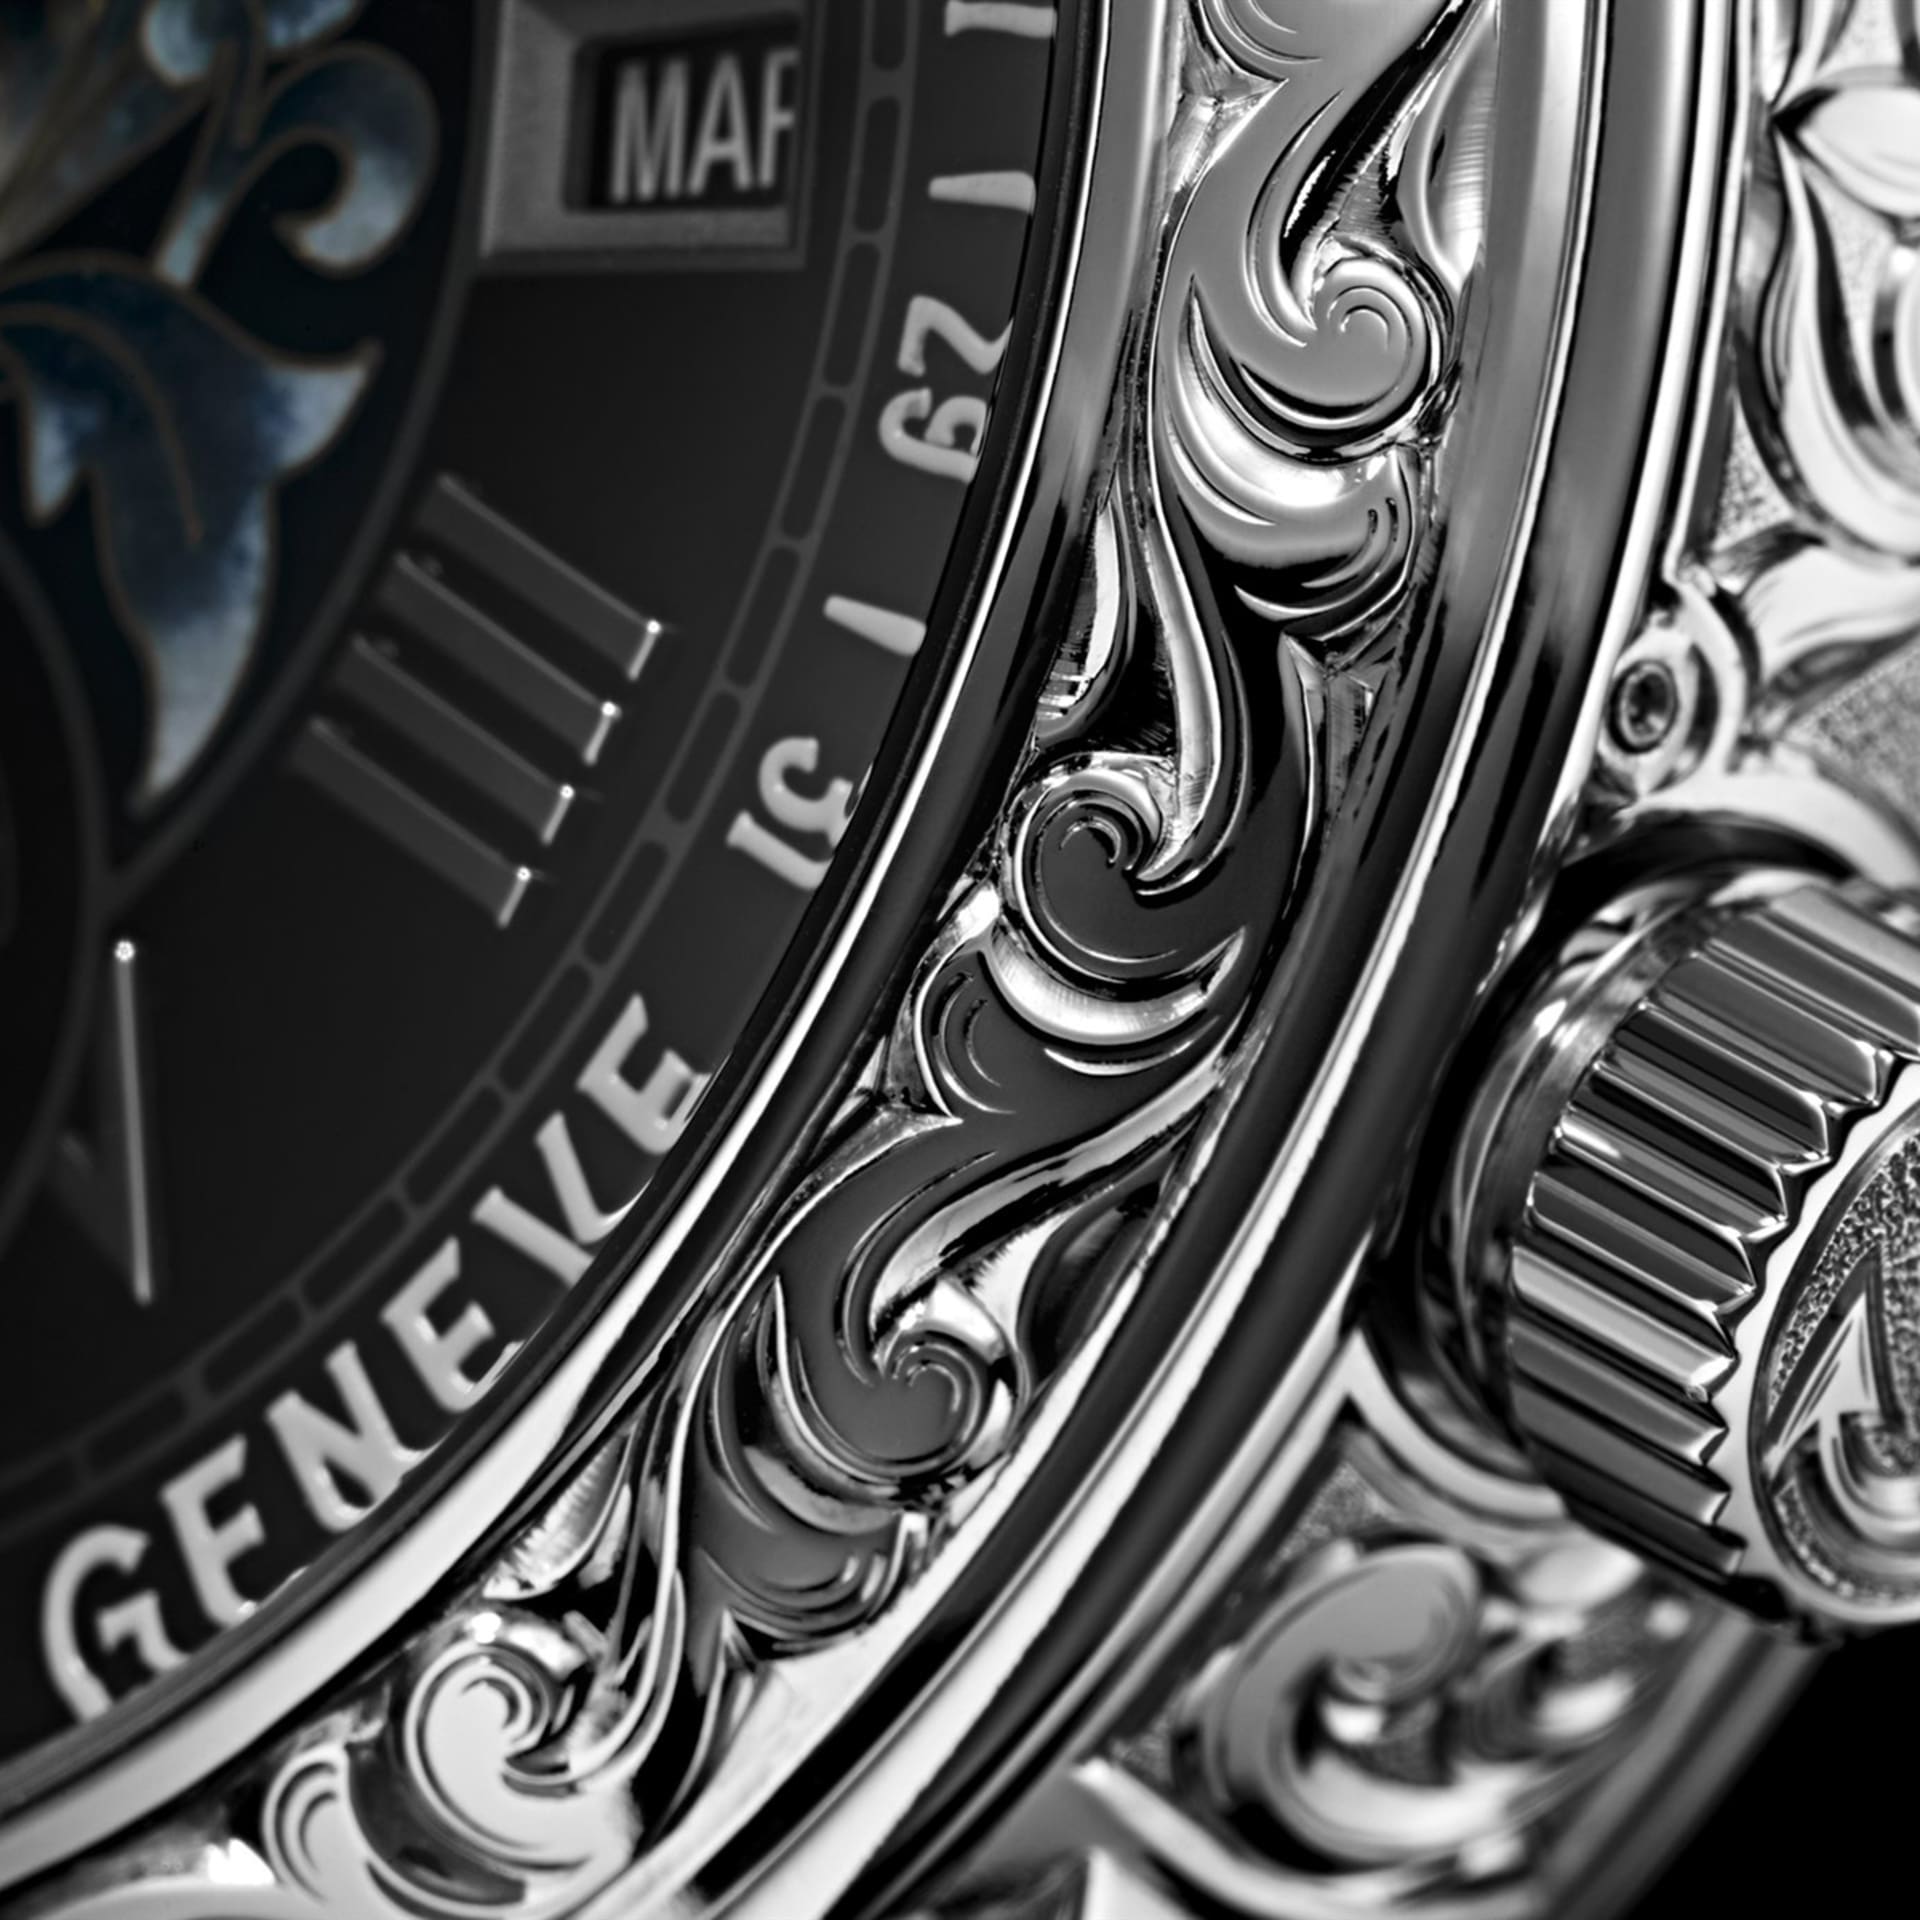 Výroba jednoho kusu hodinek Patek Philippe trvá 10 měsíců až dva roky.